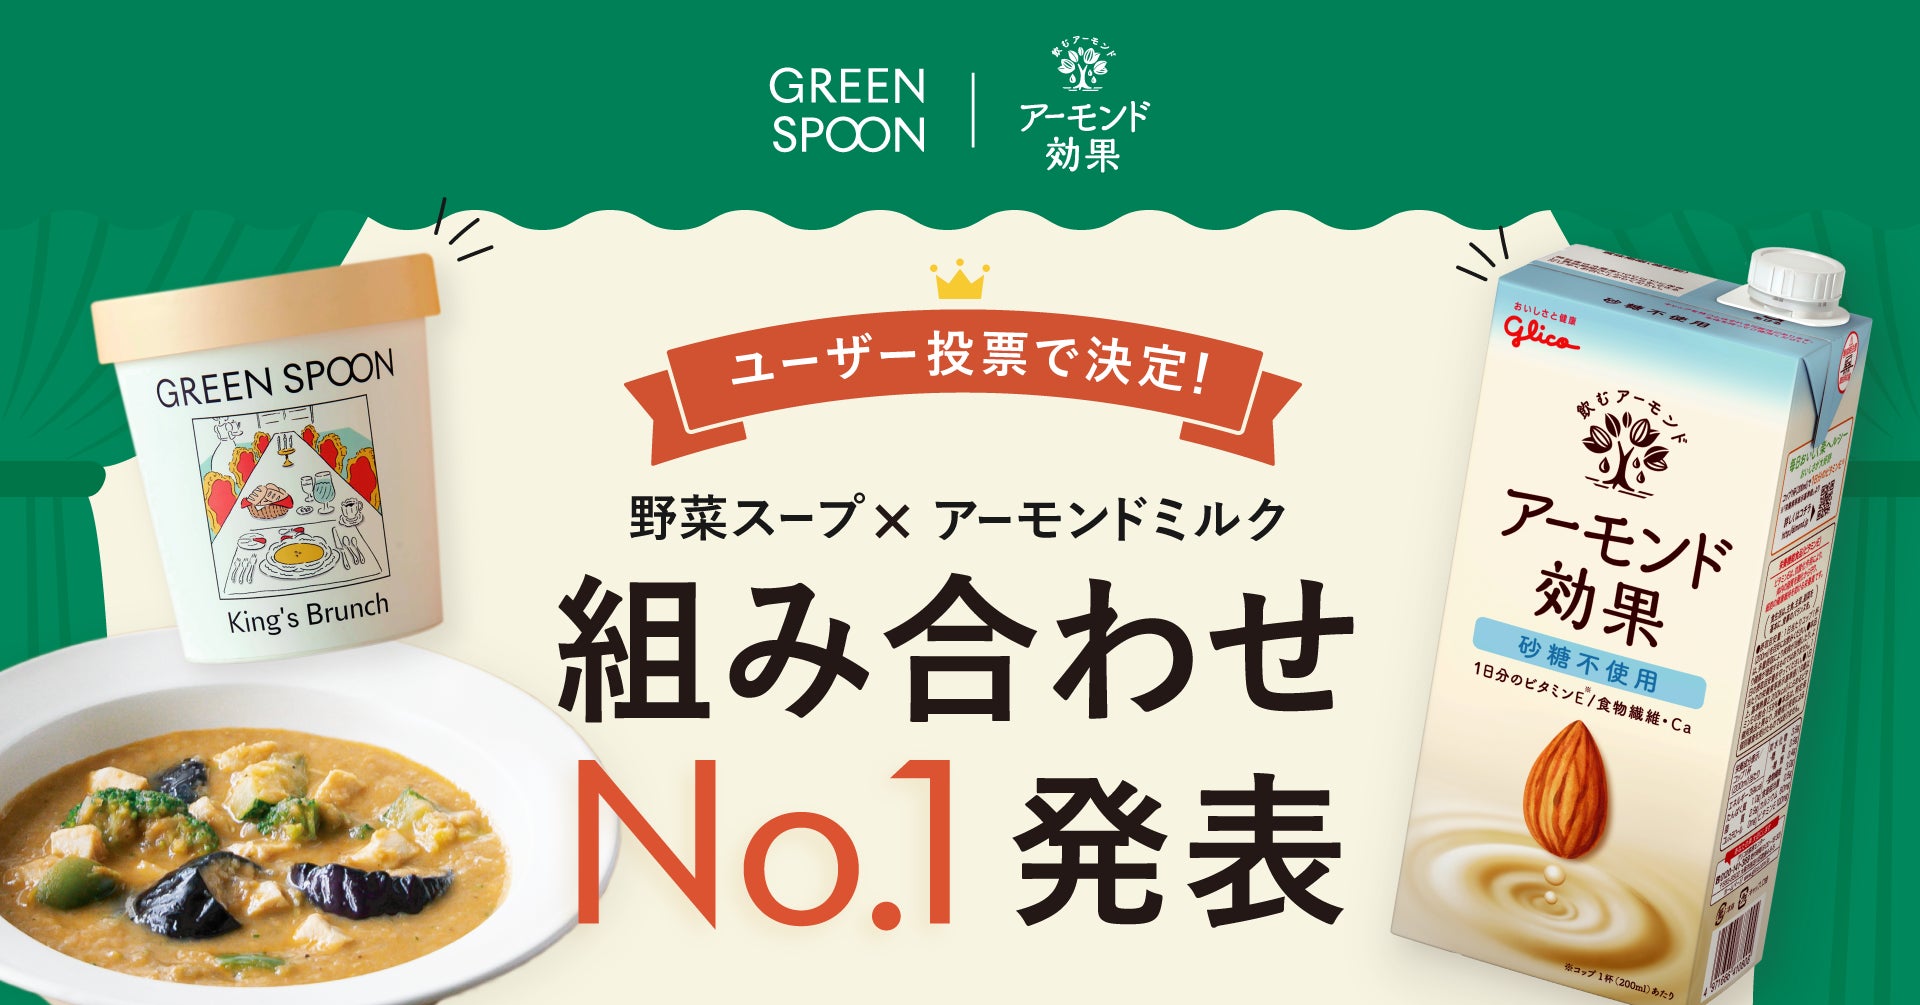 JA全農福島　×　都内レストラン6店舗コラボ　
夏が旬の福島県産桃を使用した新作デザートが
2022年7月20日(水)より順次提供開始！